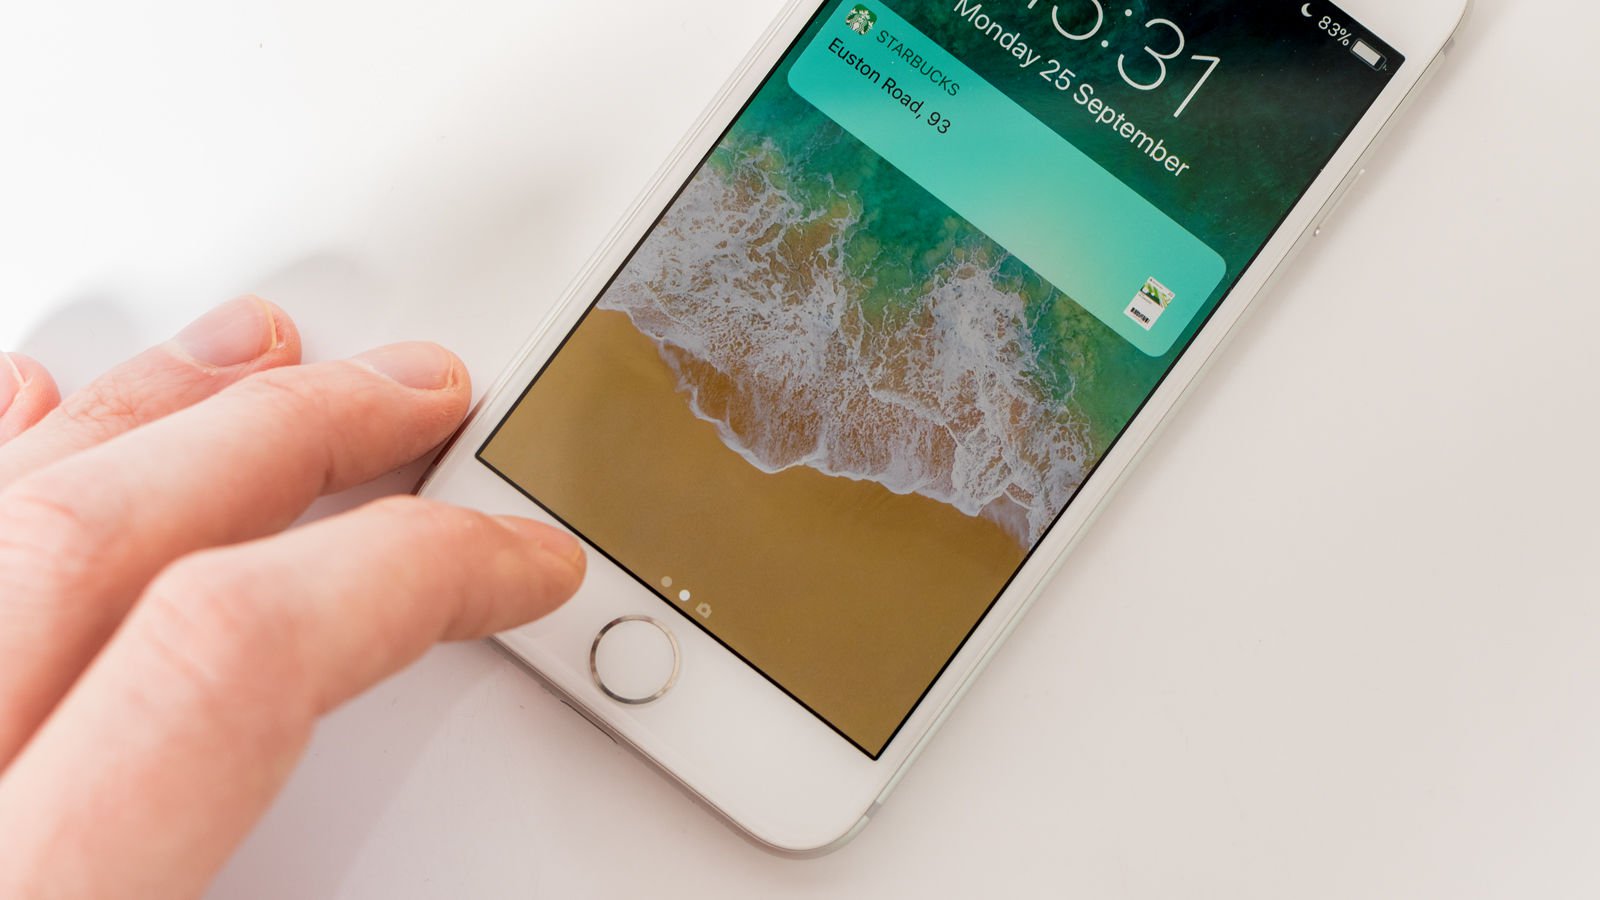 iPhone 8 vs OnePlus 5T: Design